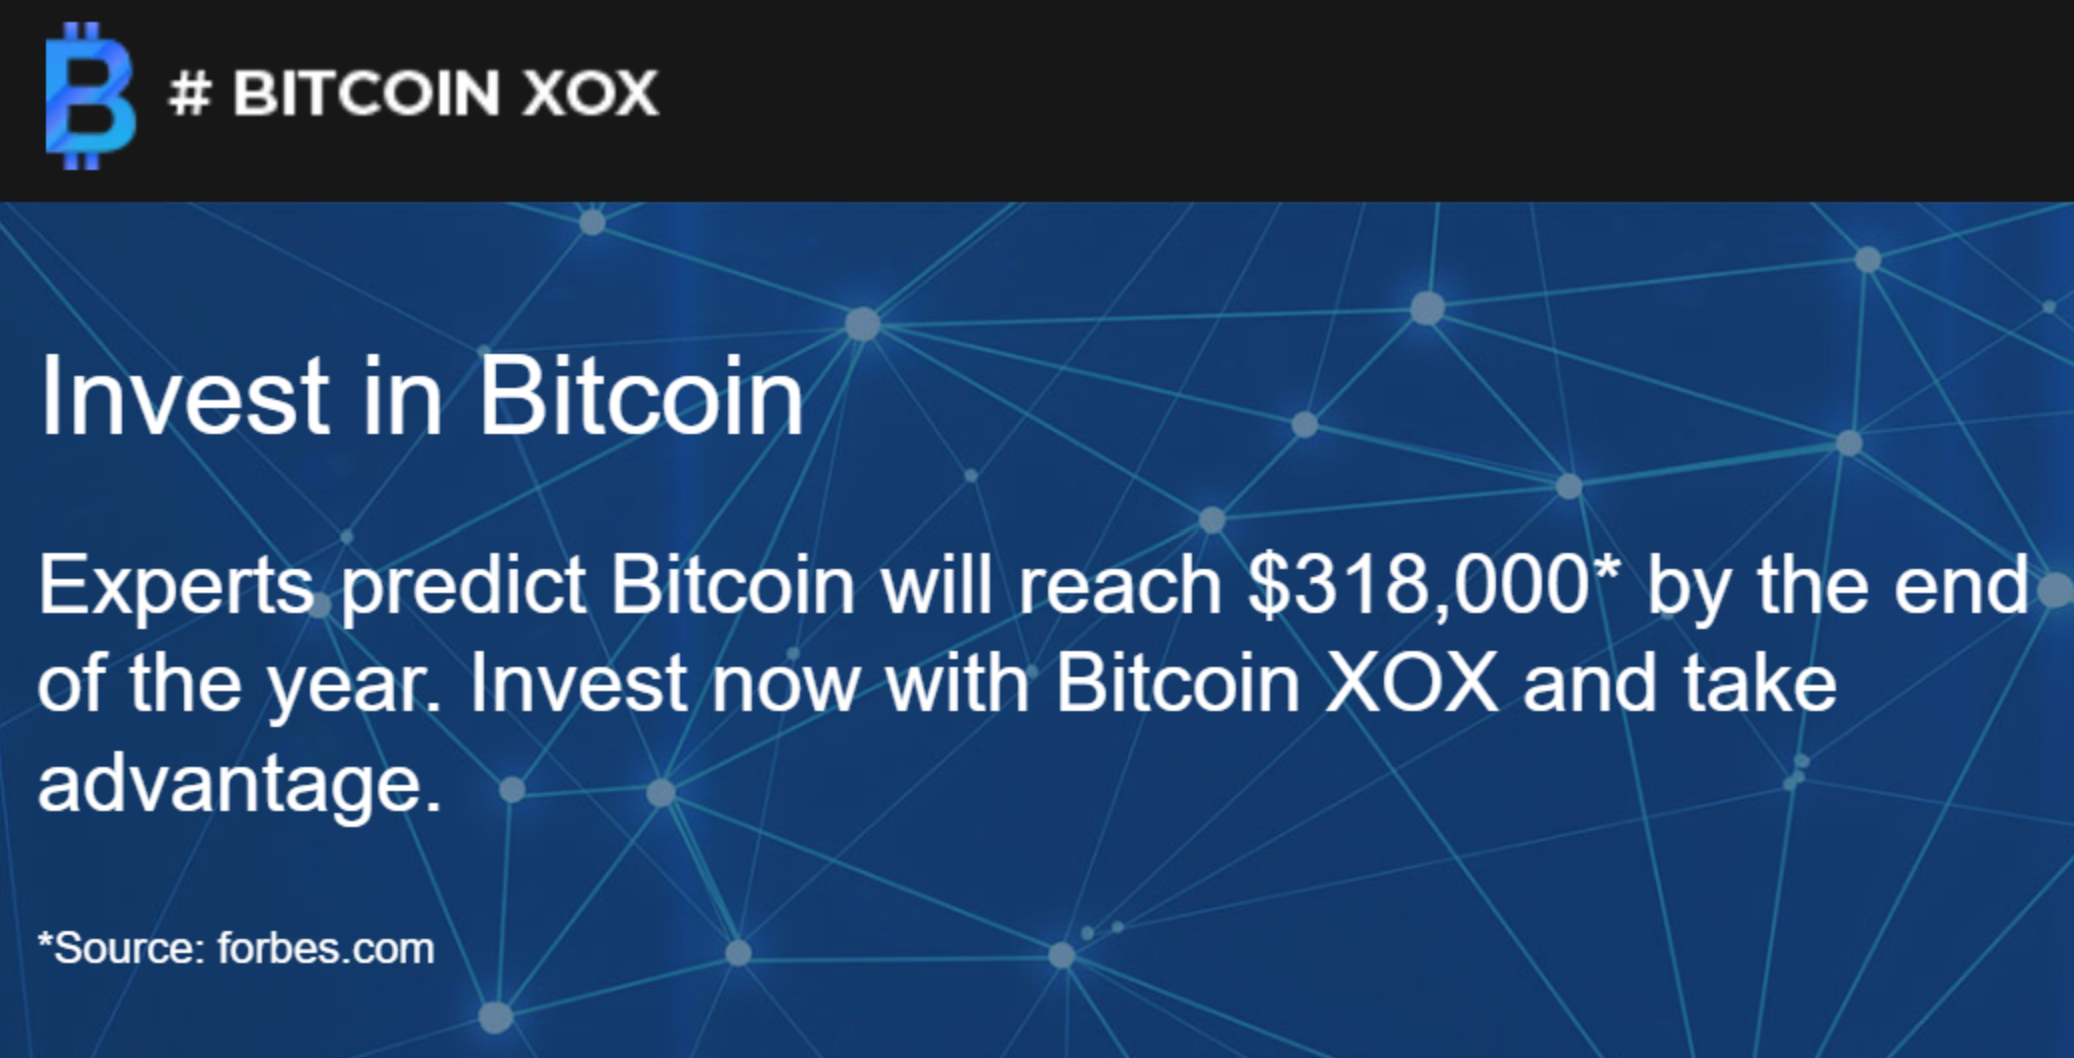 Bitcoin XOX review